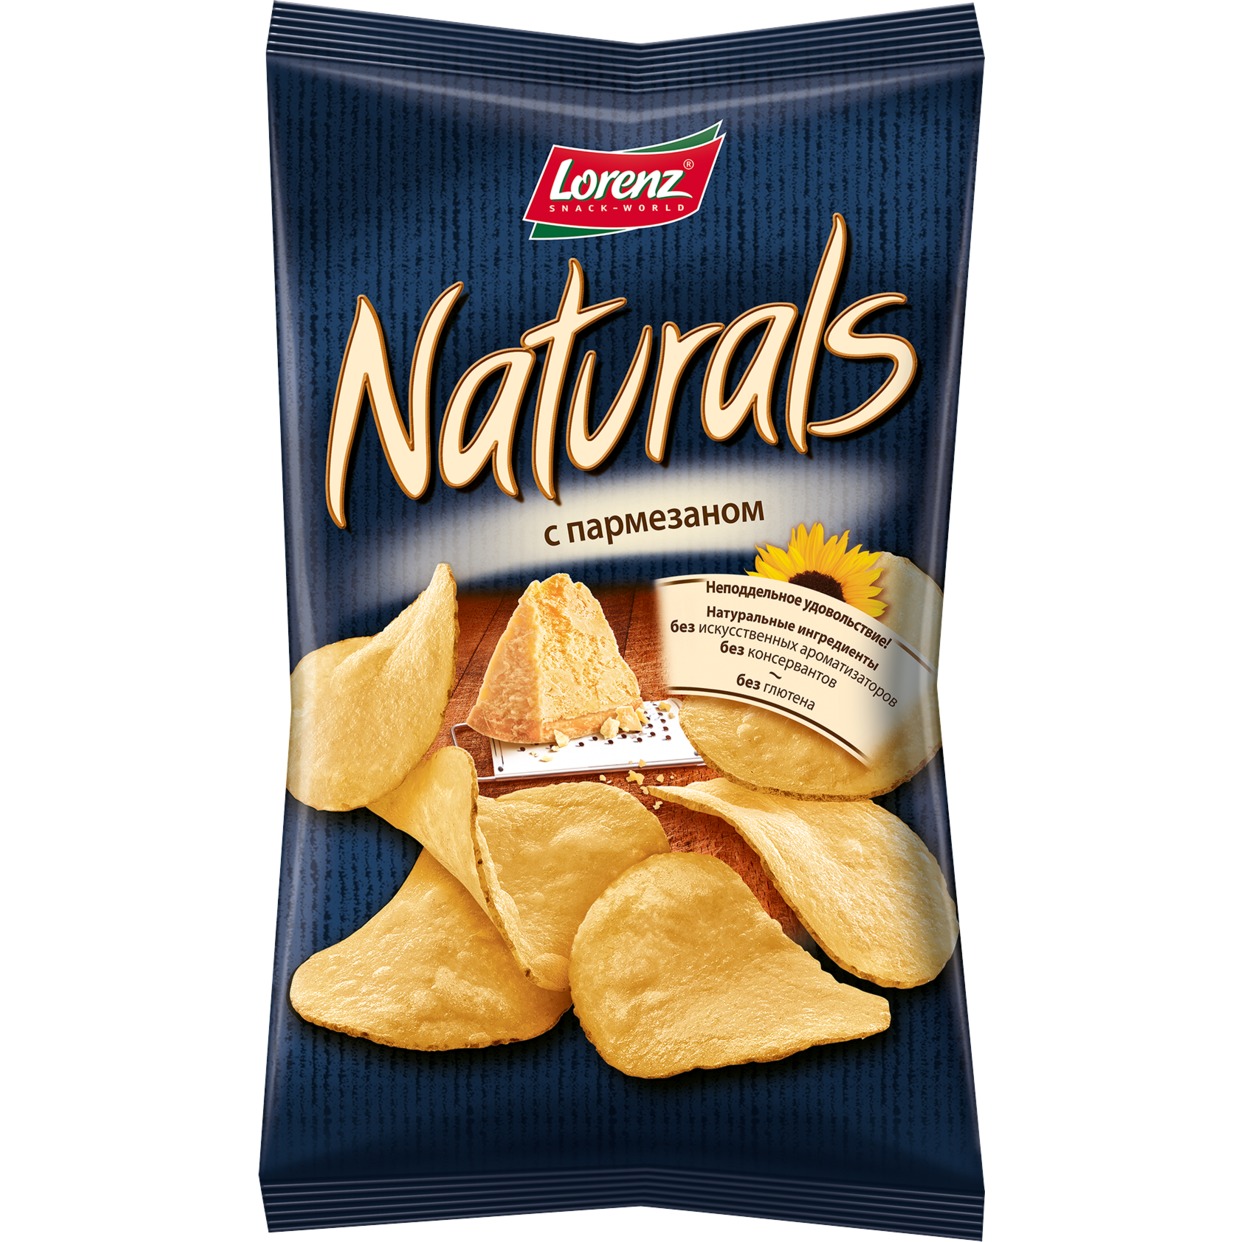 Акция в Пятерочке на Картофельные чипсы “Naturals” с пармезаном, 100 гр.